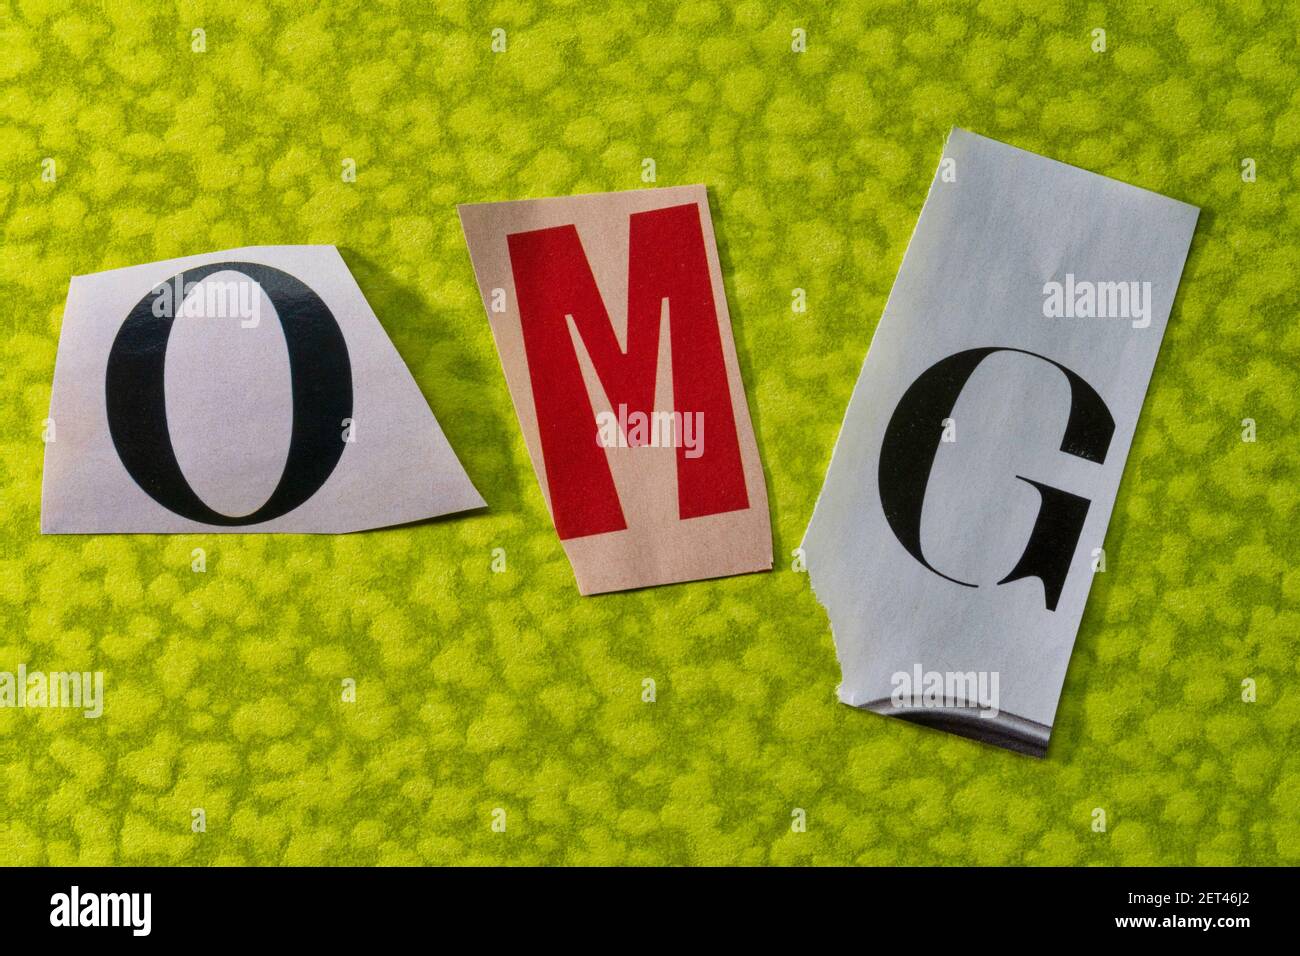 Das Akronym OMG steht für "Oh MY God" und wird in der Topographie des Ransom Note Stils, USA, geschrieben Stockfoto